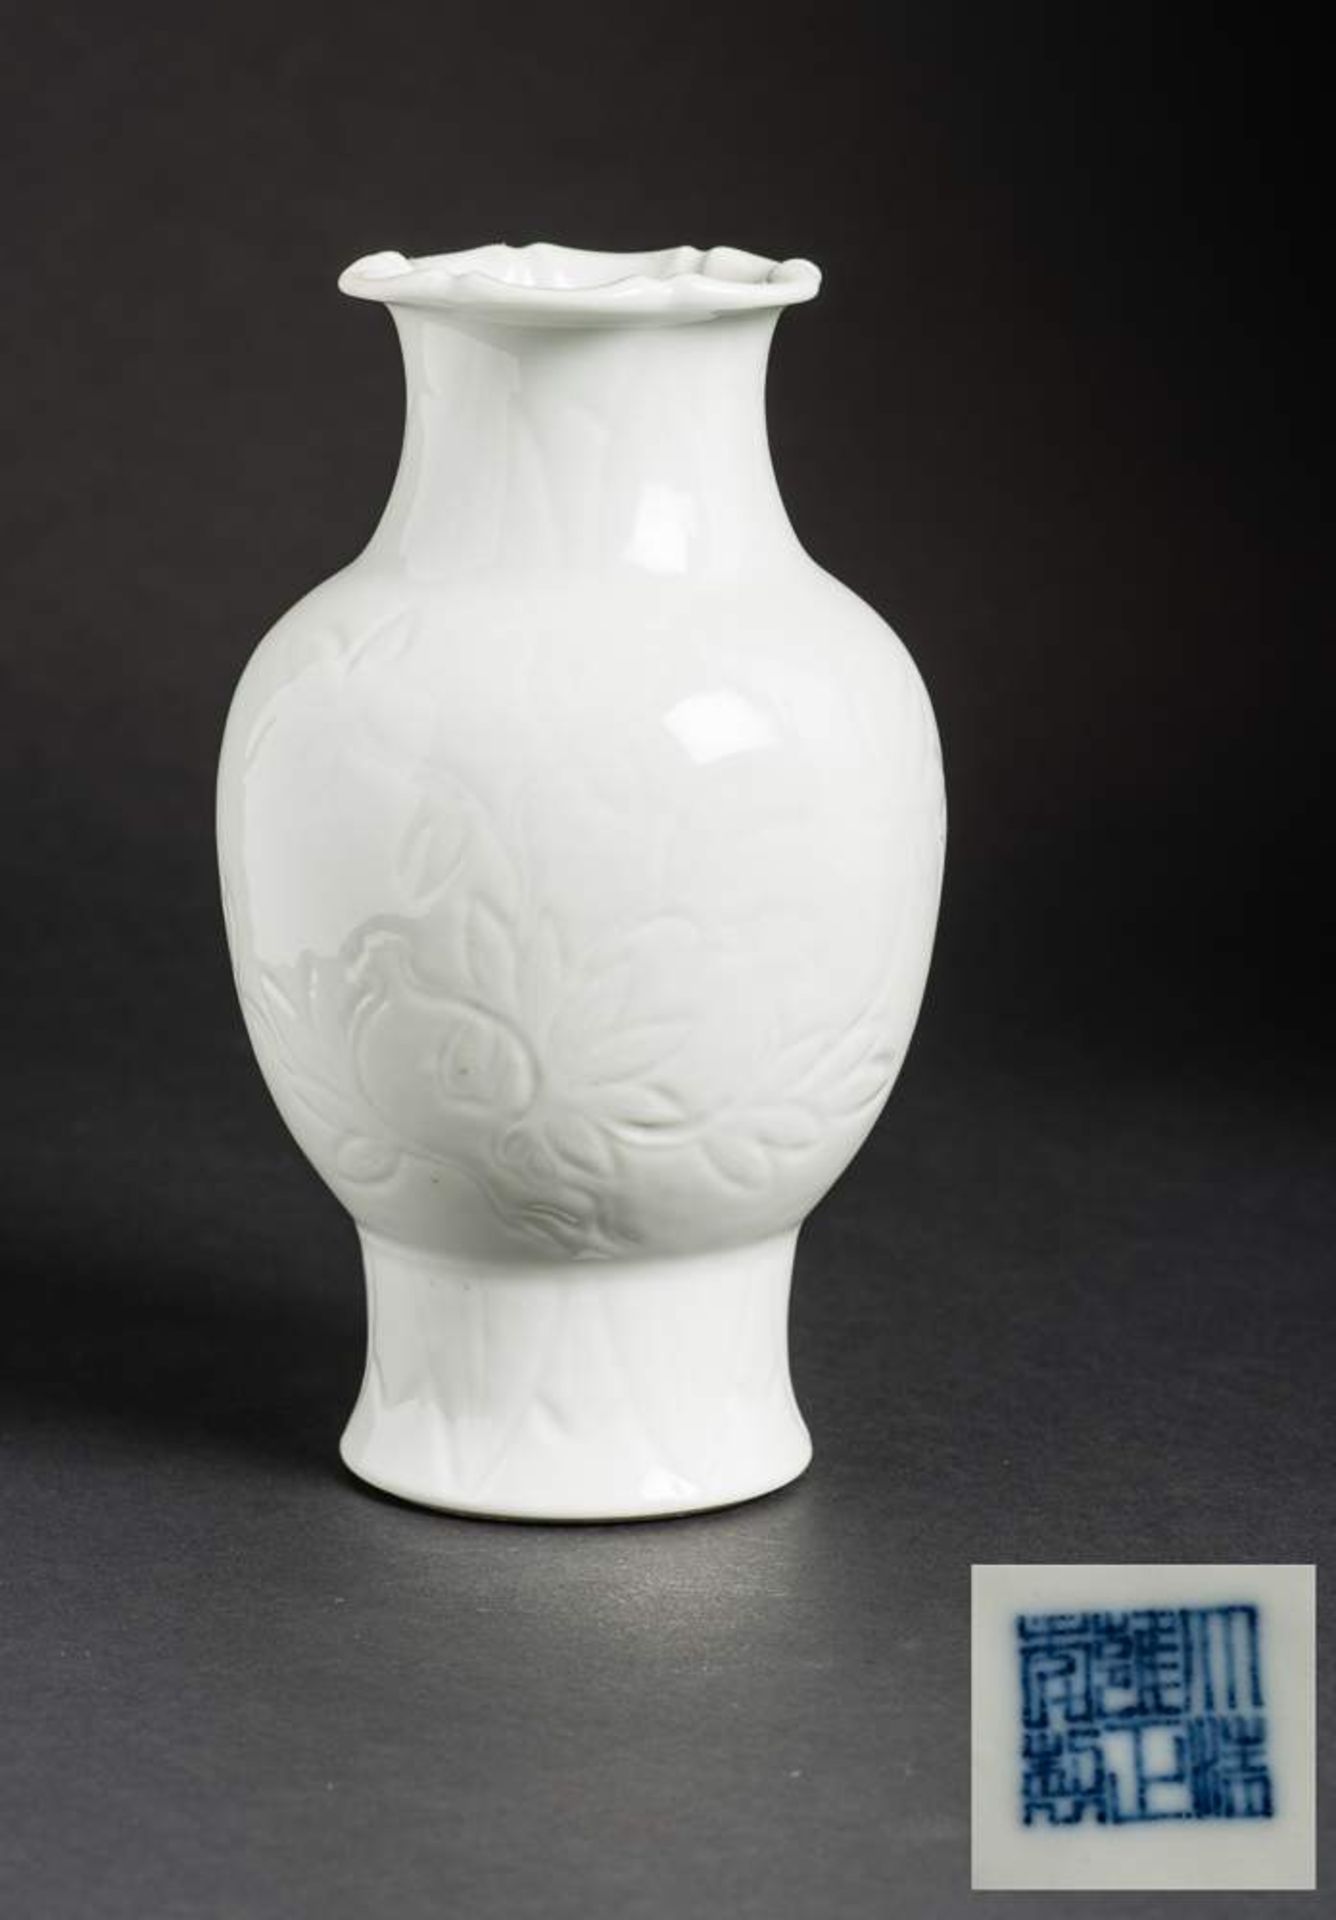 VASE MIT BLÜTENRELIEF
Blanc de Chine-Porzellan. China, späte Qing-Dynastie, ca. 19. Jh.Mit